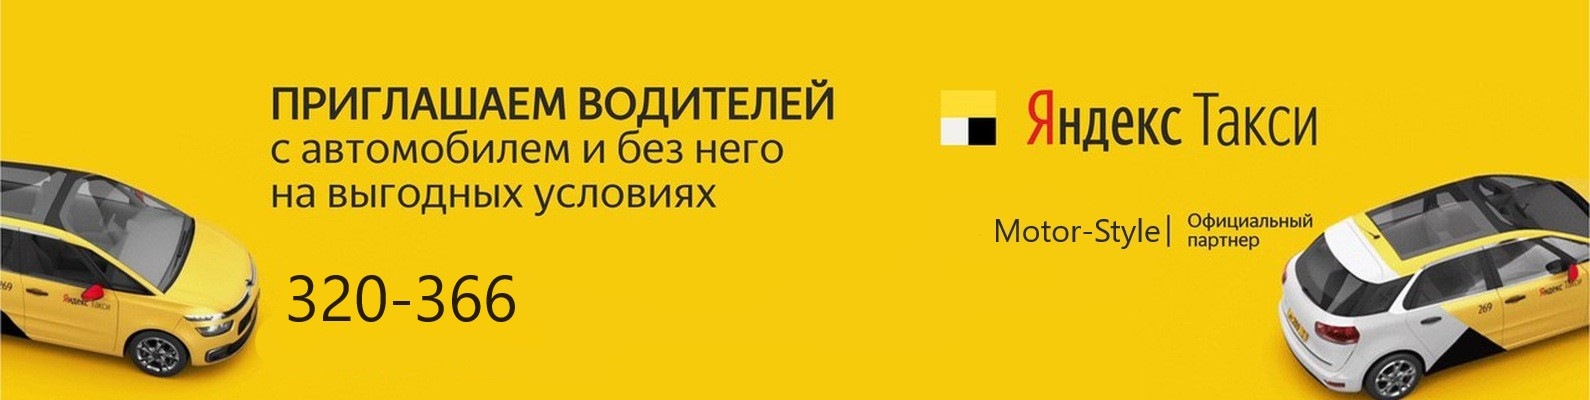 Яндекс такси балашиха отзывы